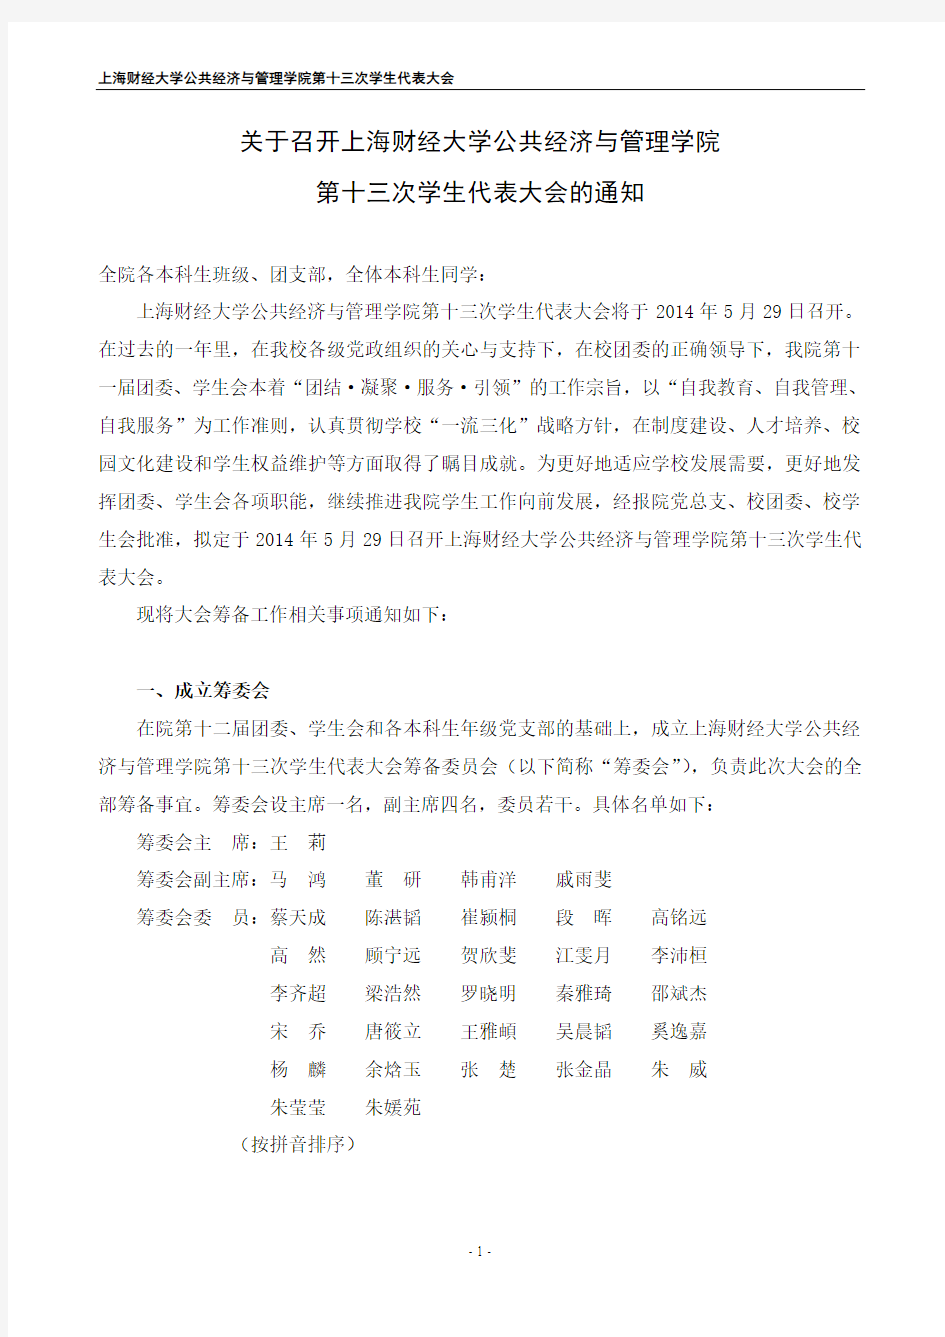 关于召开上海财经大学公共经济与管理学院